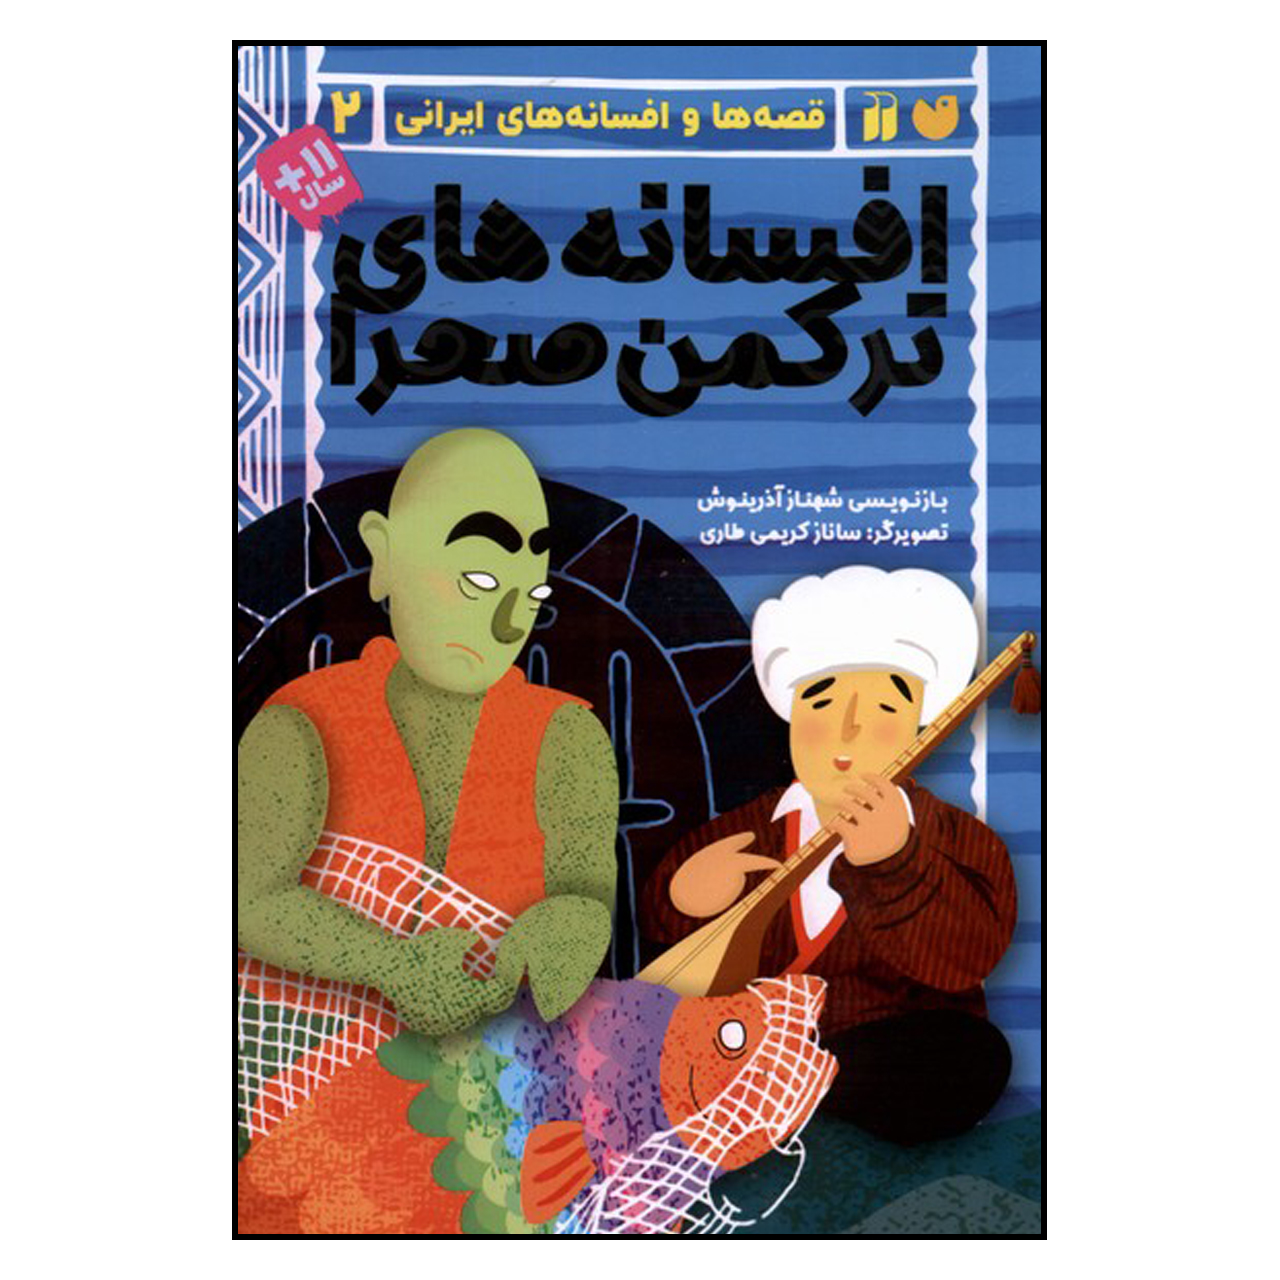  کتاب افسانه های ترکمن صحرا اثر شهناز آذرینوش نشر ذکر